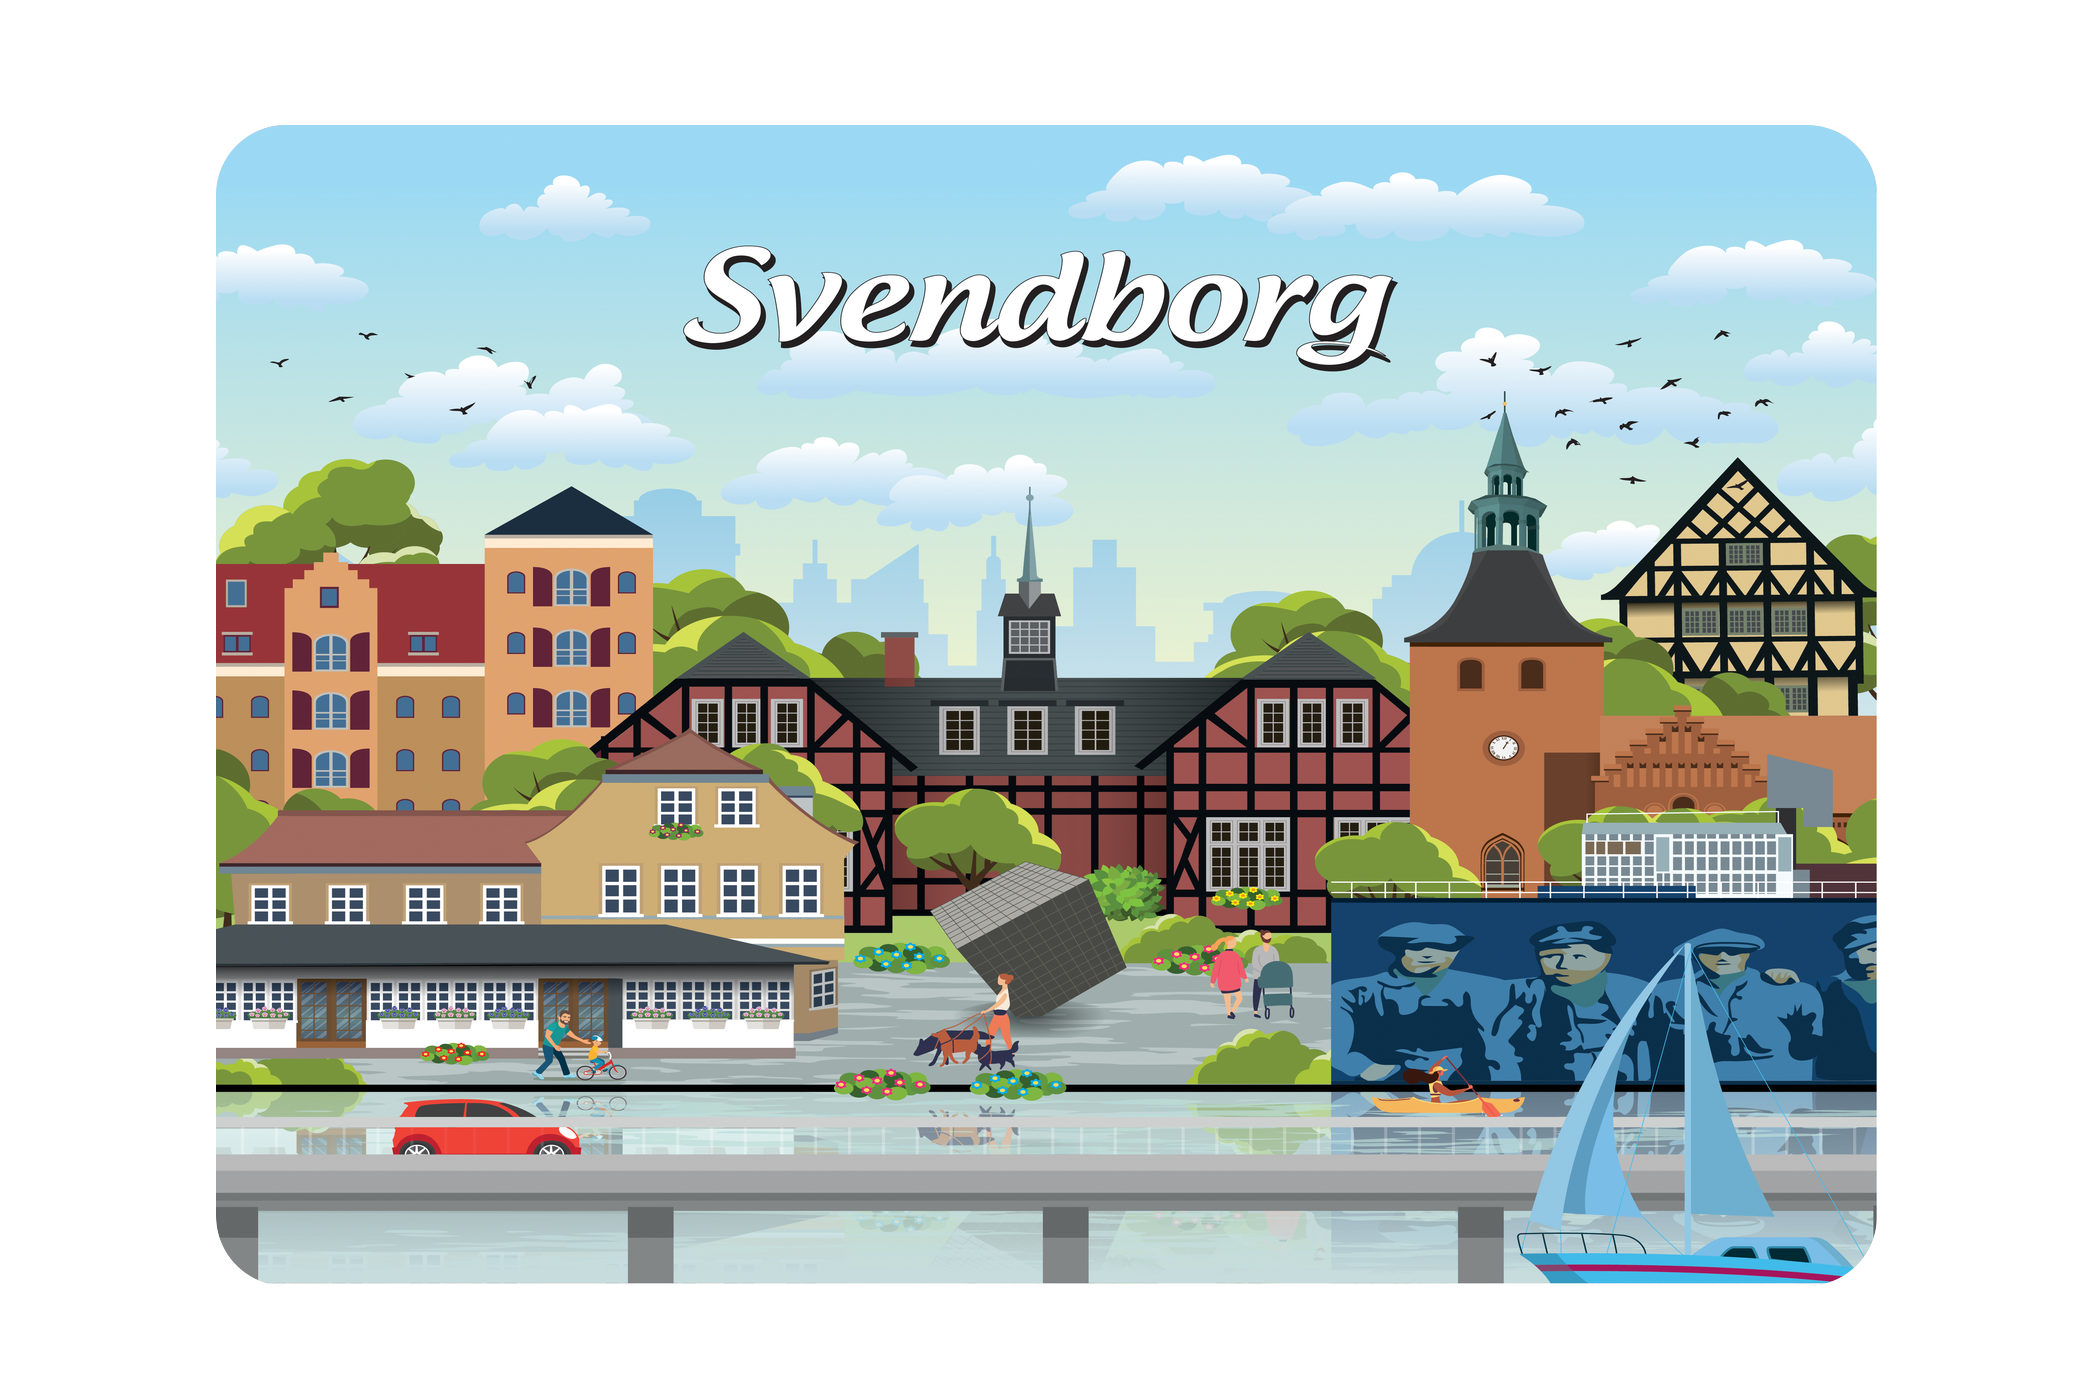 Svendborg - Bykoncept